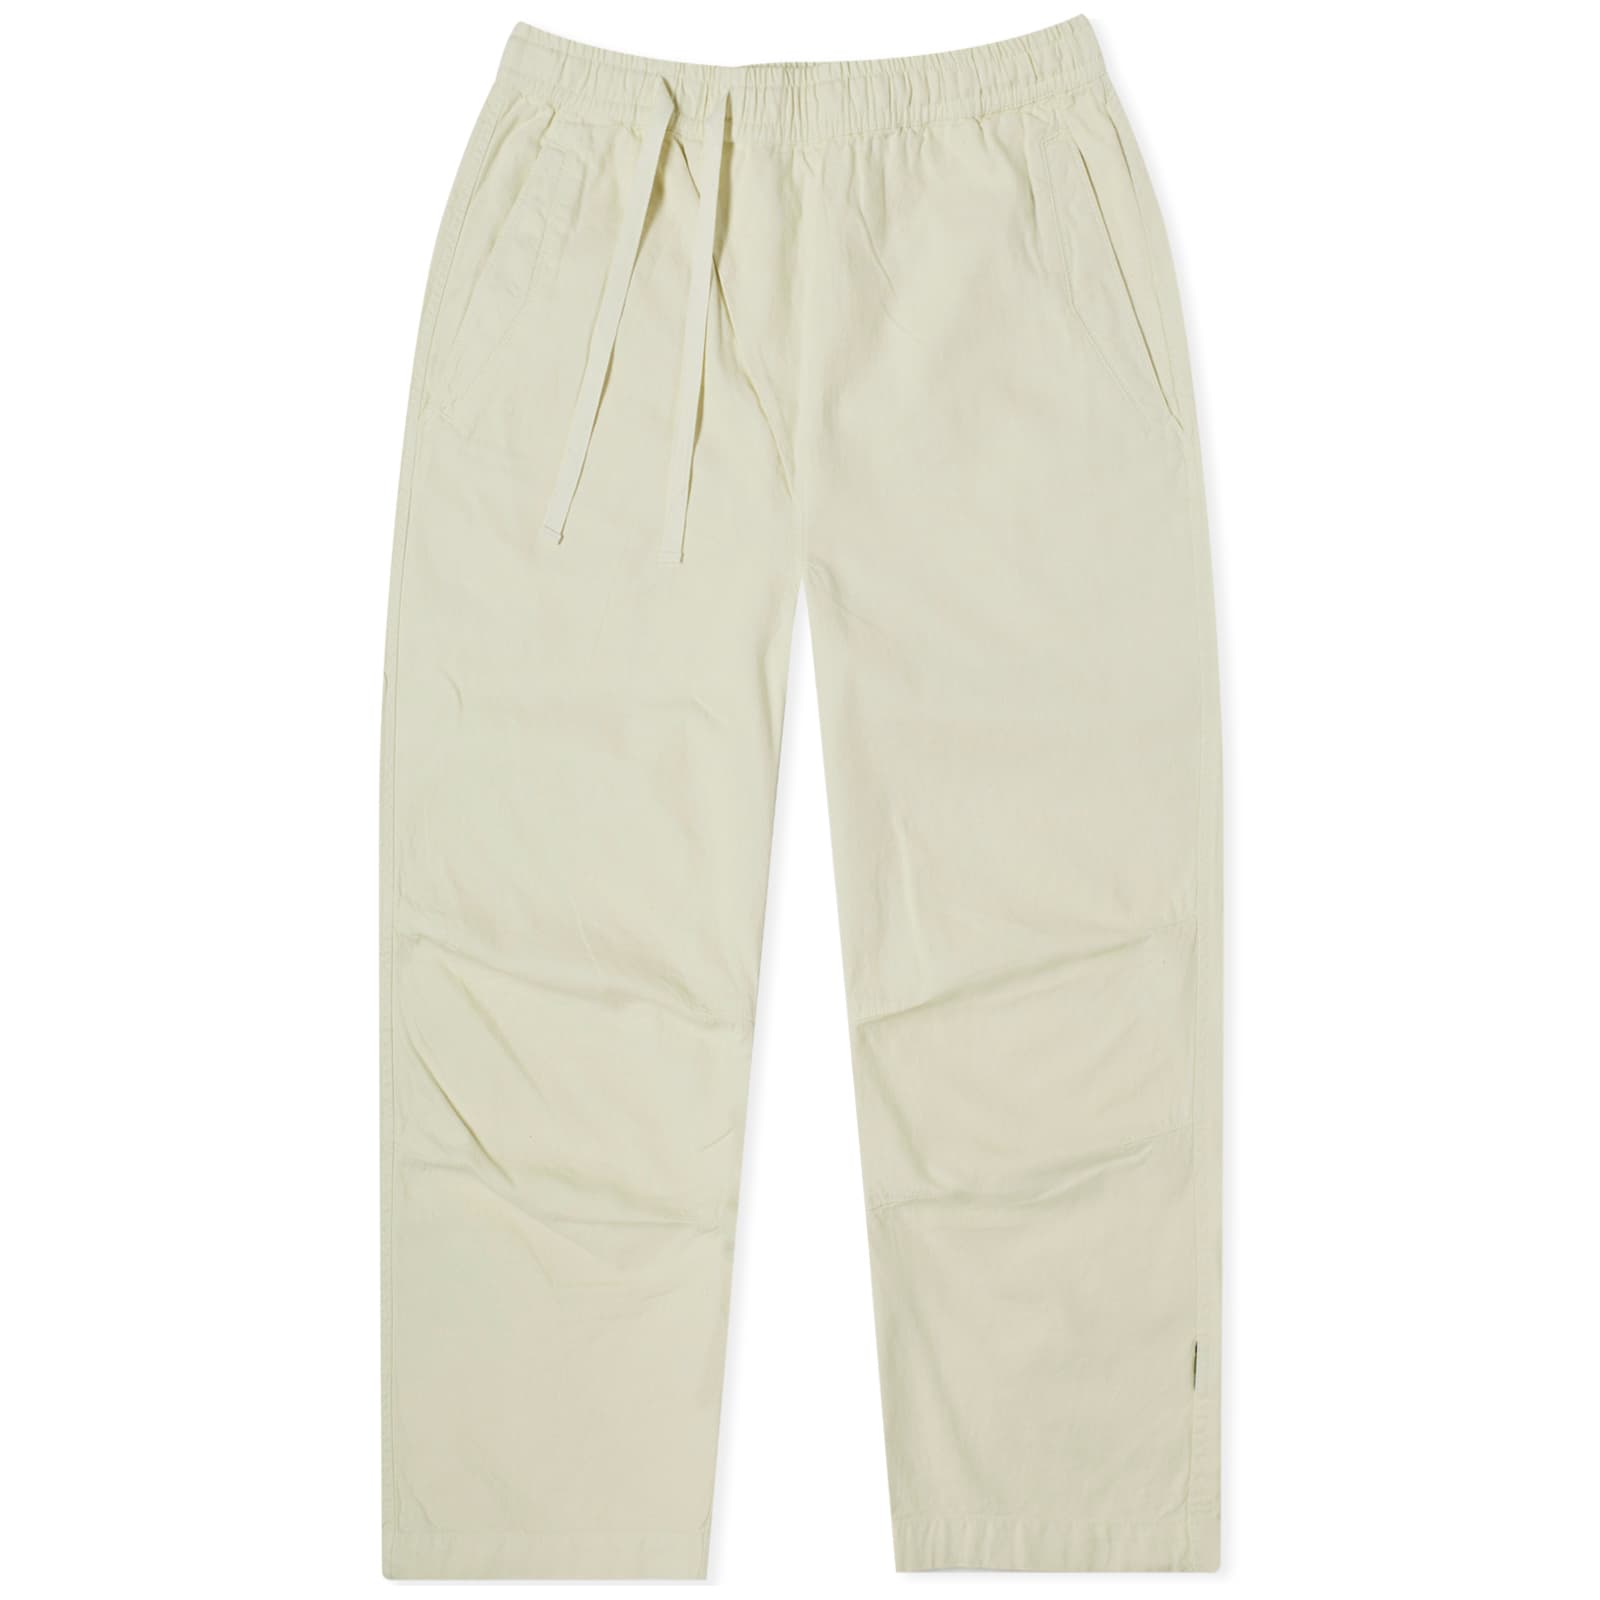 брюки maharishi 5008 hemp asym 3 4 track pants размер 52 зеленый Спортивные брюки Maharishi Hemp Asym Wide, экрю